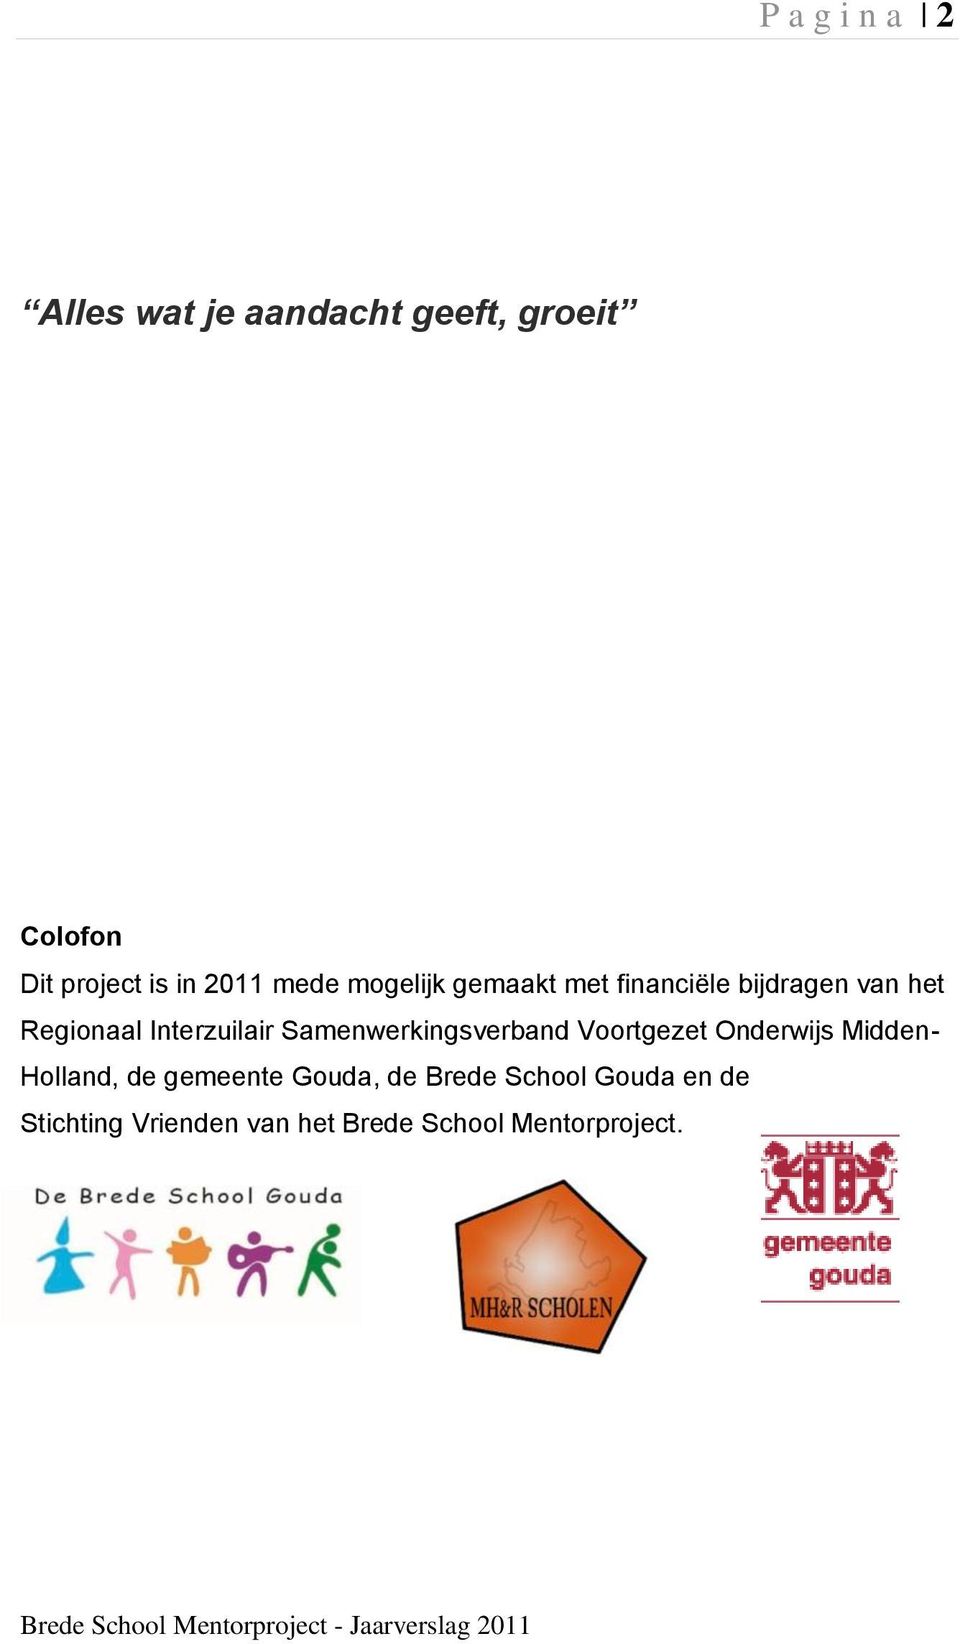 Interzuilair Samenwerkingsverband Voortgezet Onderwijs Midden- Holland, de